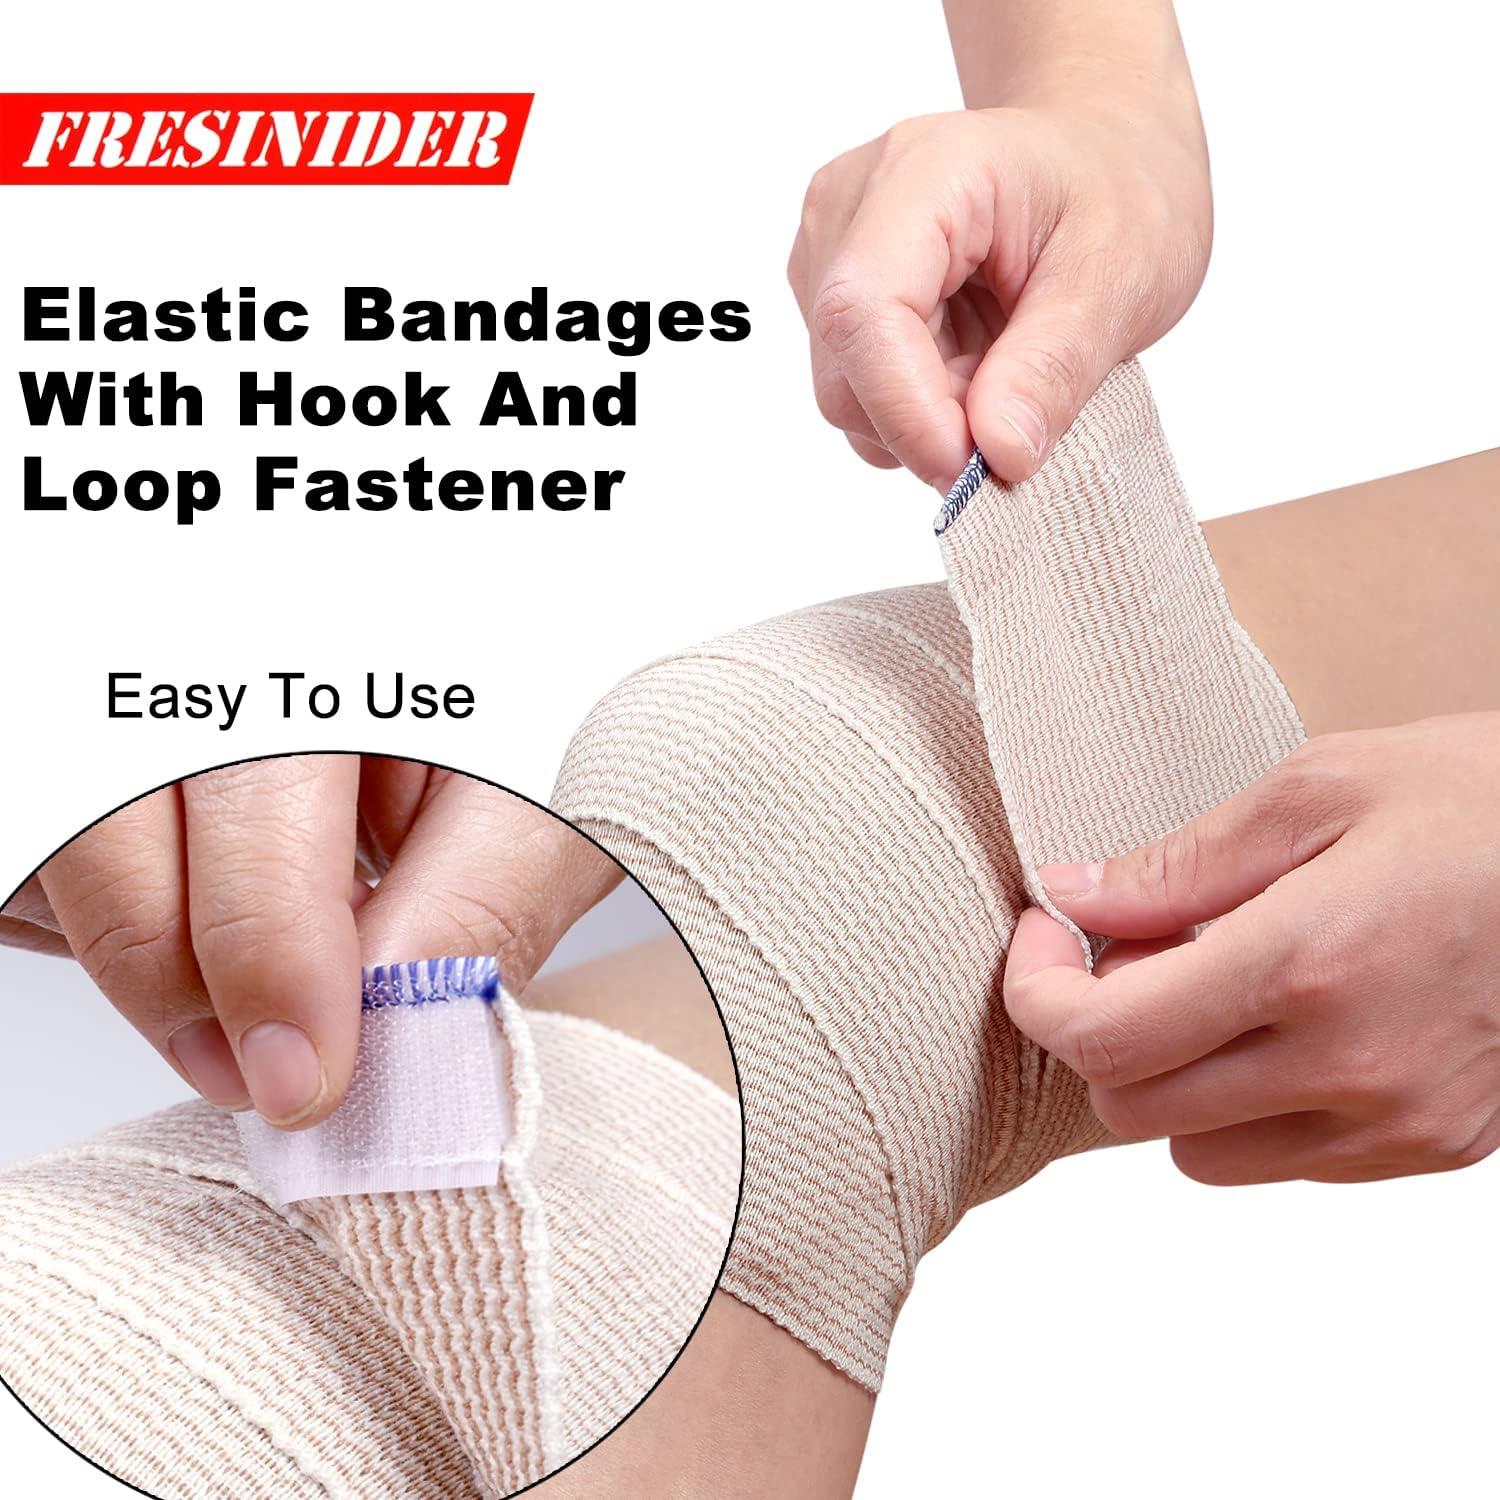 FRESINIDER Premium Elastic Bandage Wrap 4 Pack 6 Cotton Latex Free